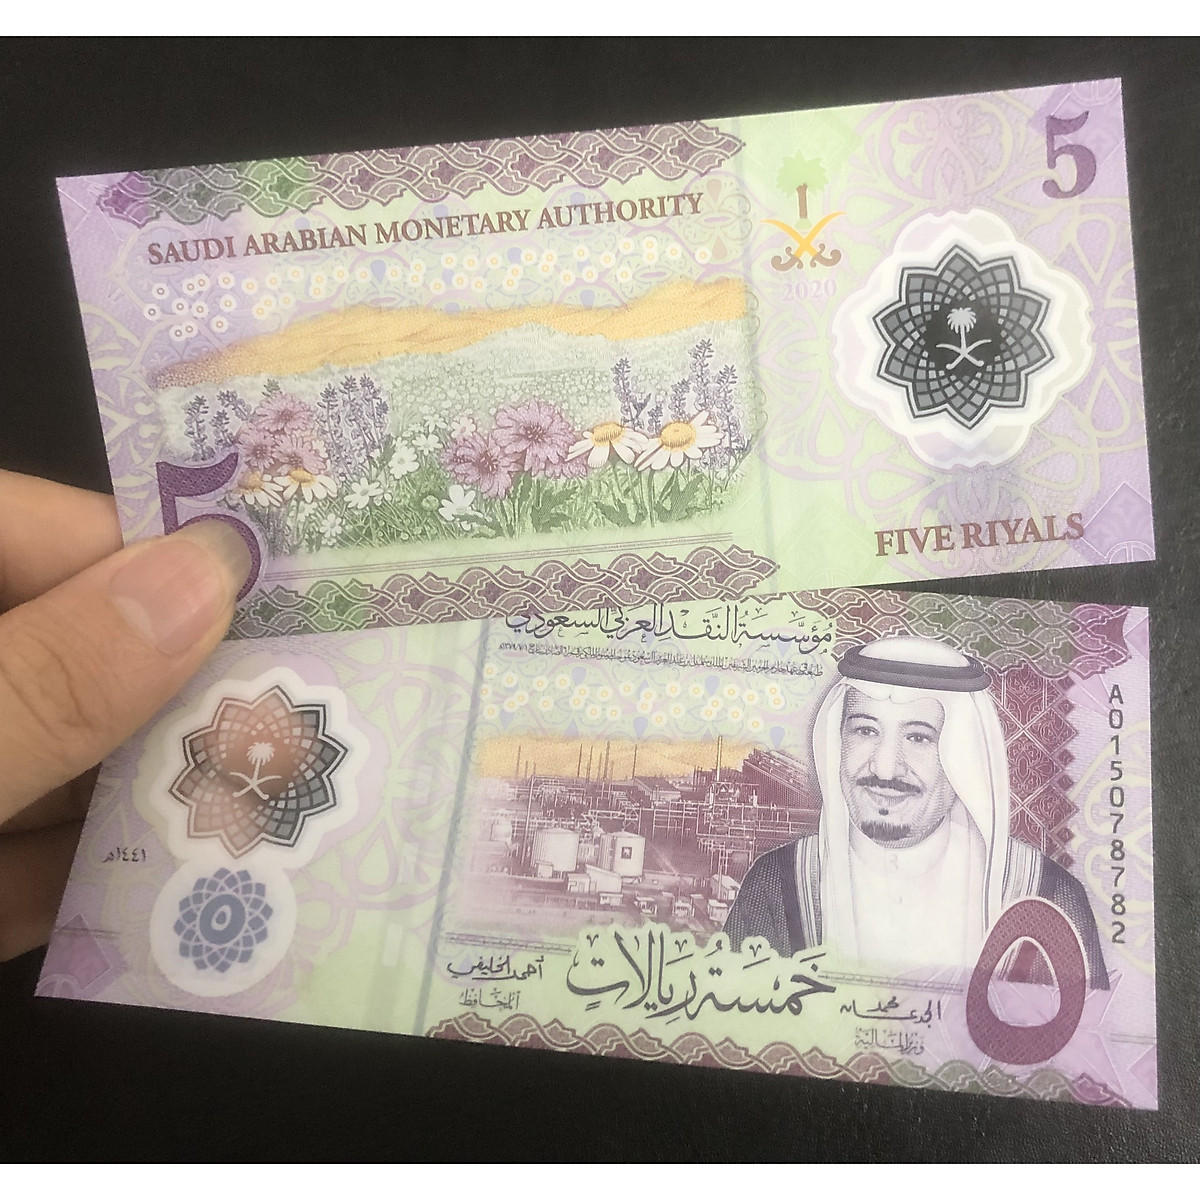 Tiền thế giới, Ả rập Saudi polymer mệnh giá 5 Ry thiết kế đẹp mắt - Tiền mới keng 100% - Tặng túi nilon bảo quản